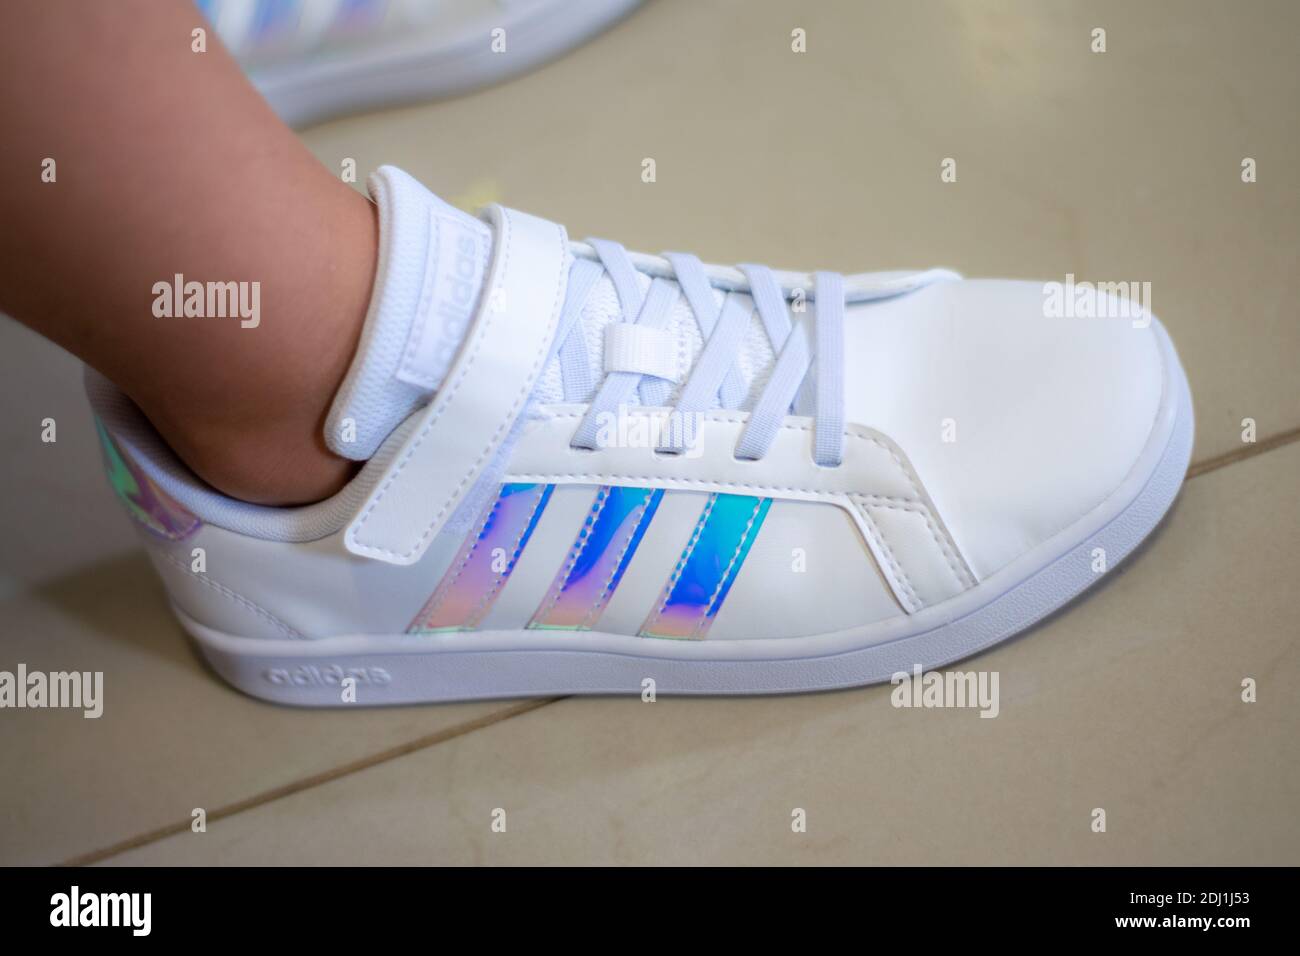 Zapatillas Adidas Fotos e Imágenes de stock - Alamy